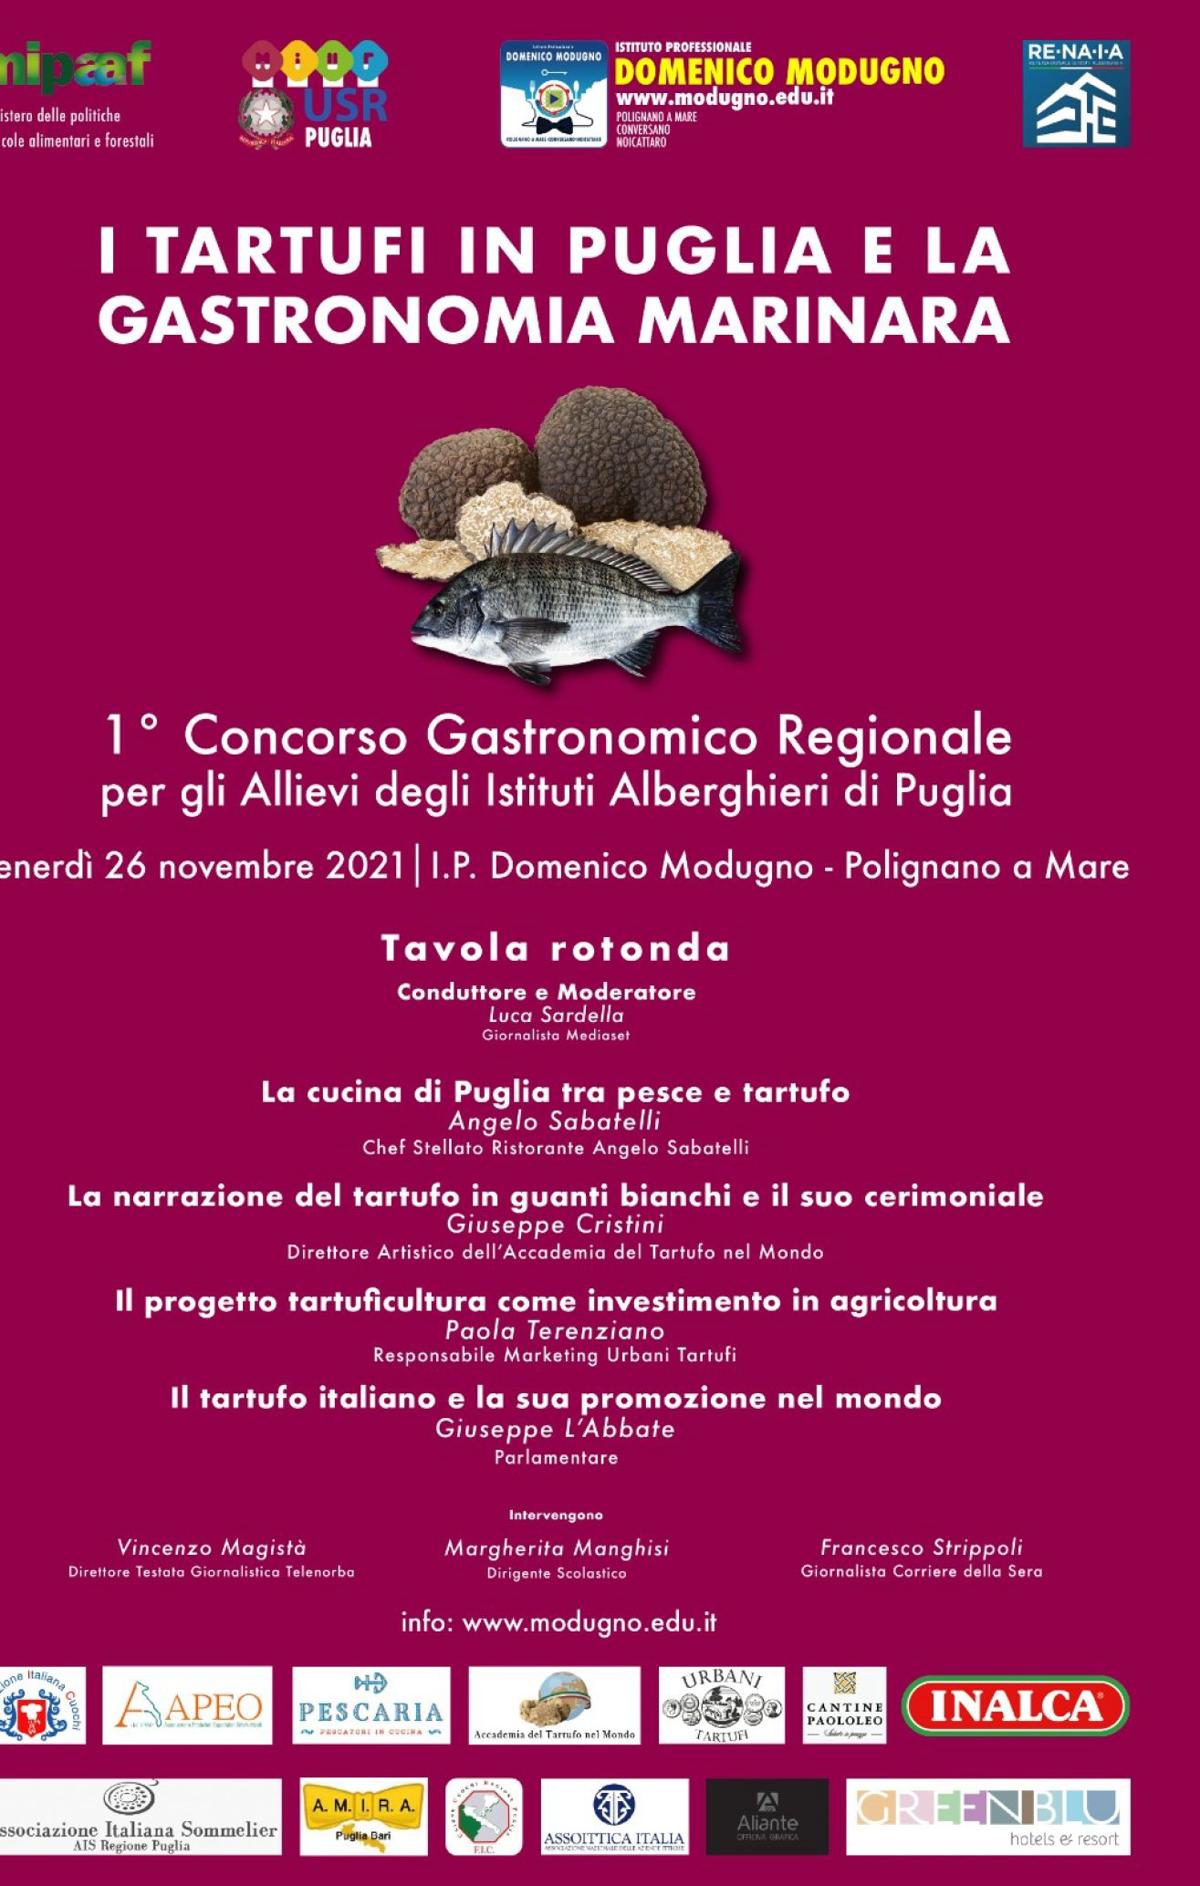 I.tartufi.in.Puglia.e.la.gastronomia.marinara.1